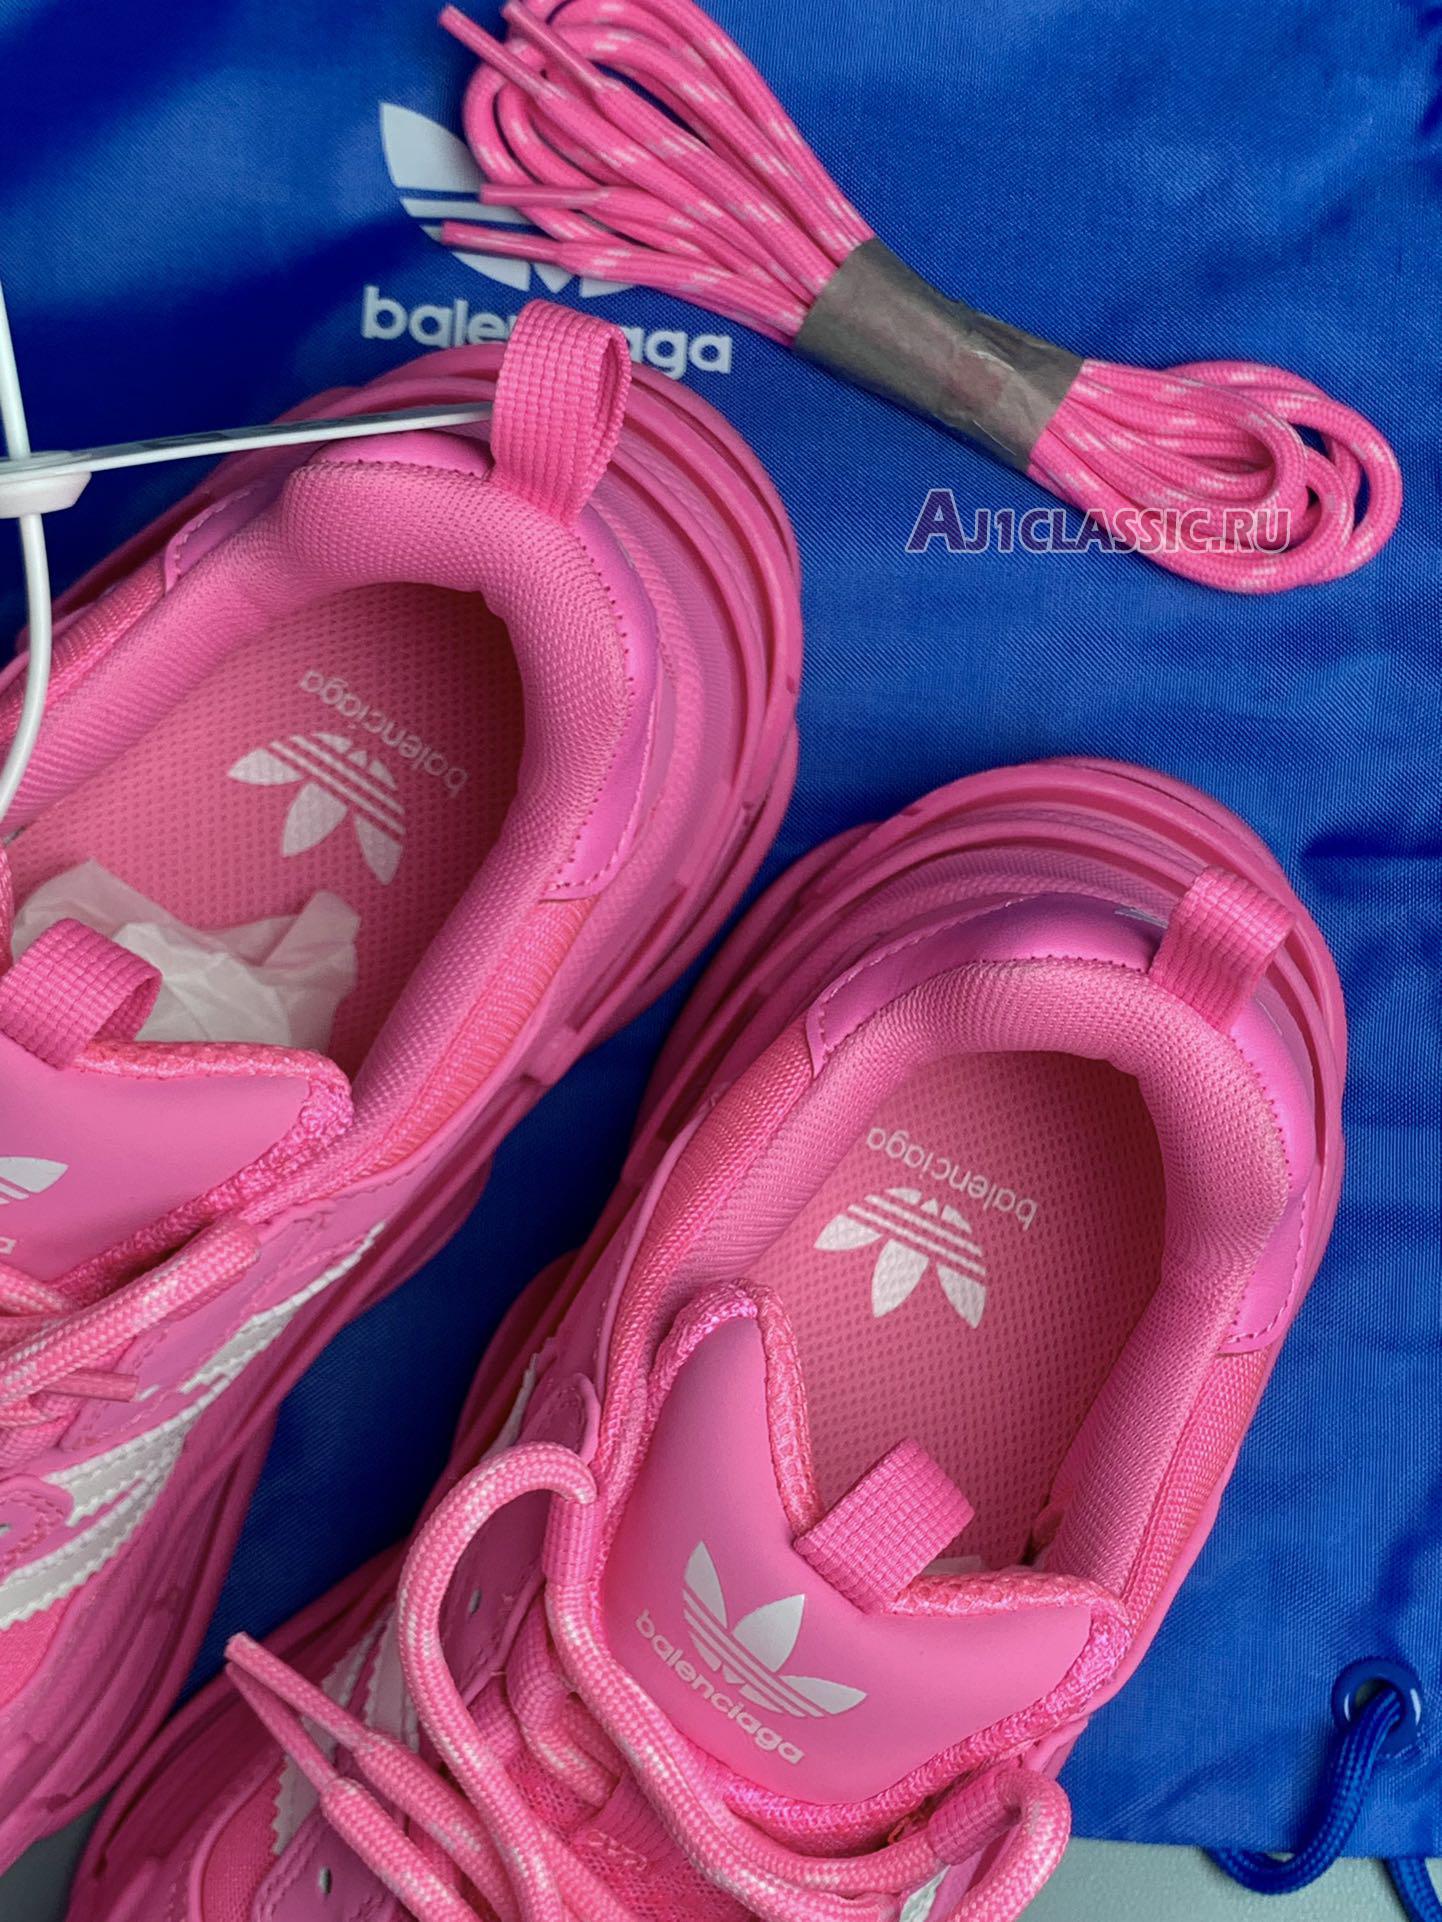 Adidas x Balenciaga Wmns Triple S Sneaker "Neon Pink" 712764 W2ZB6 5590